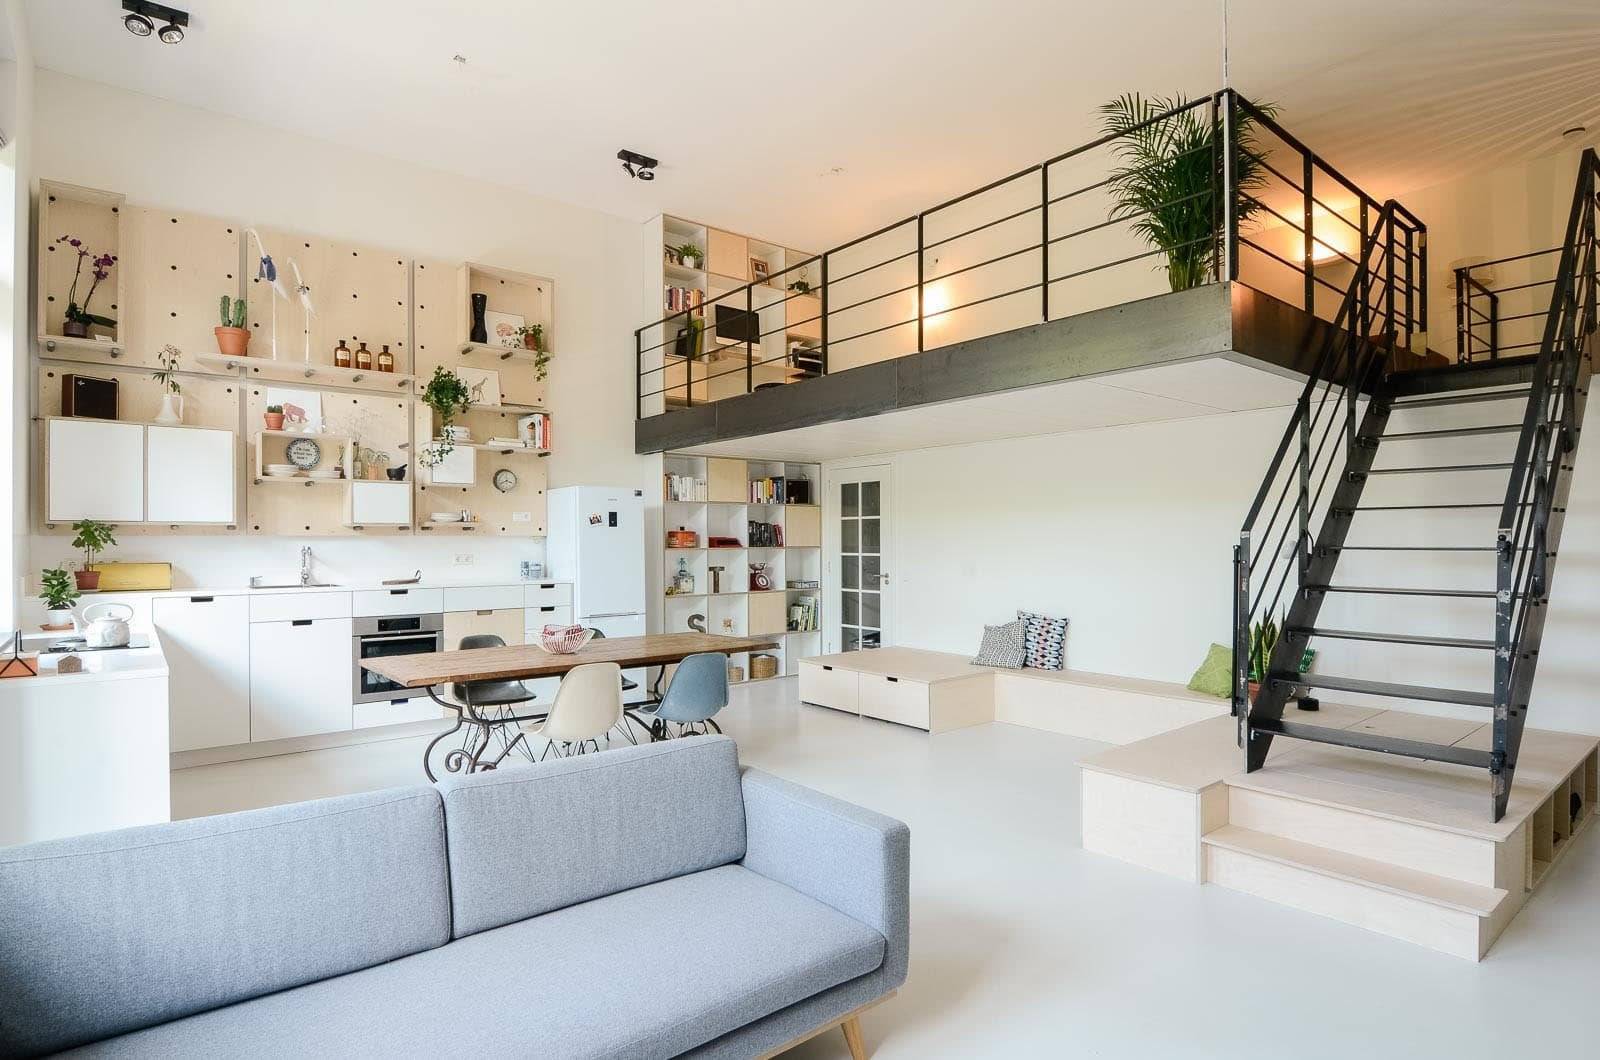 Низкий потолок в квартире – не беда: уникальные решения от талантливых дизайнеров